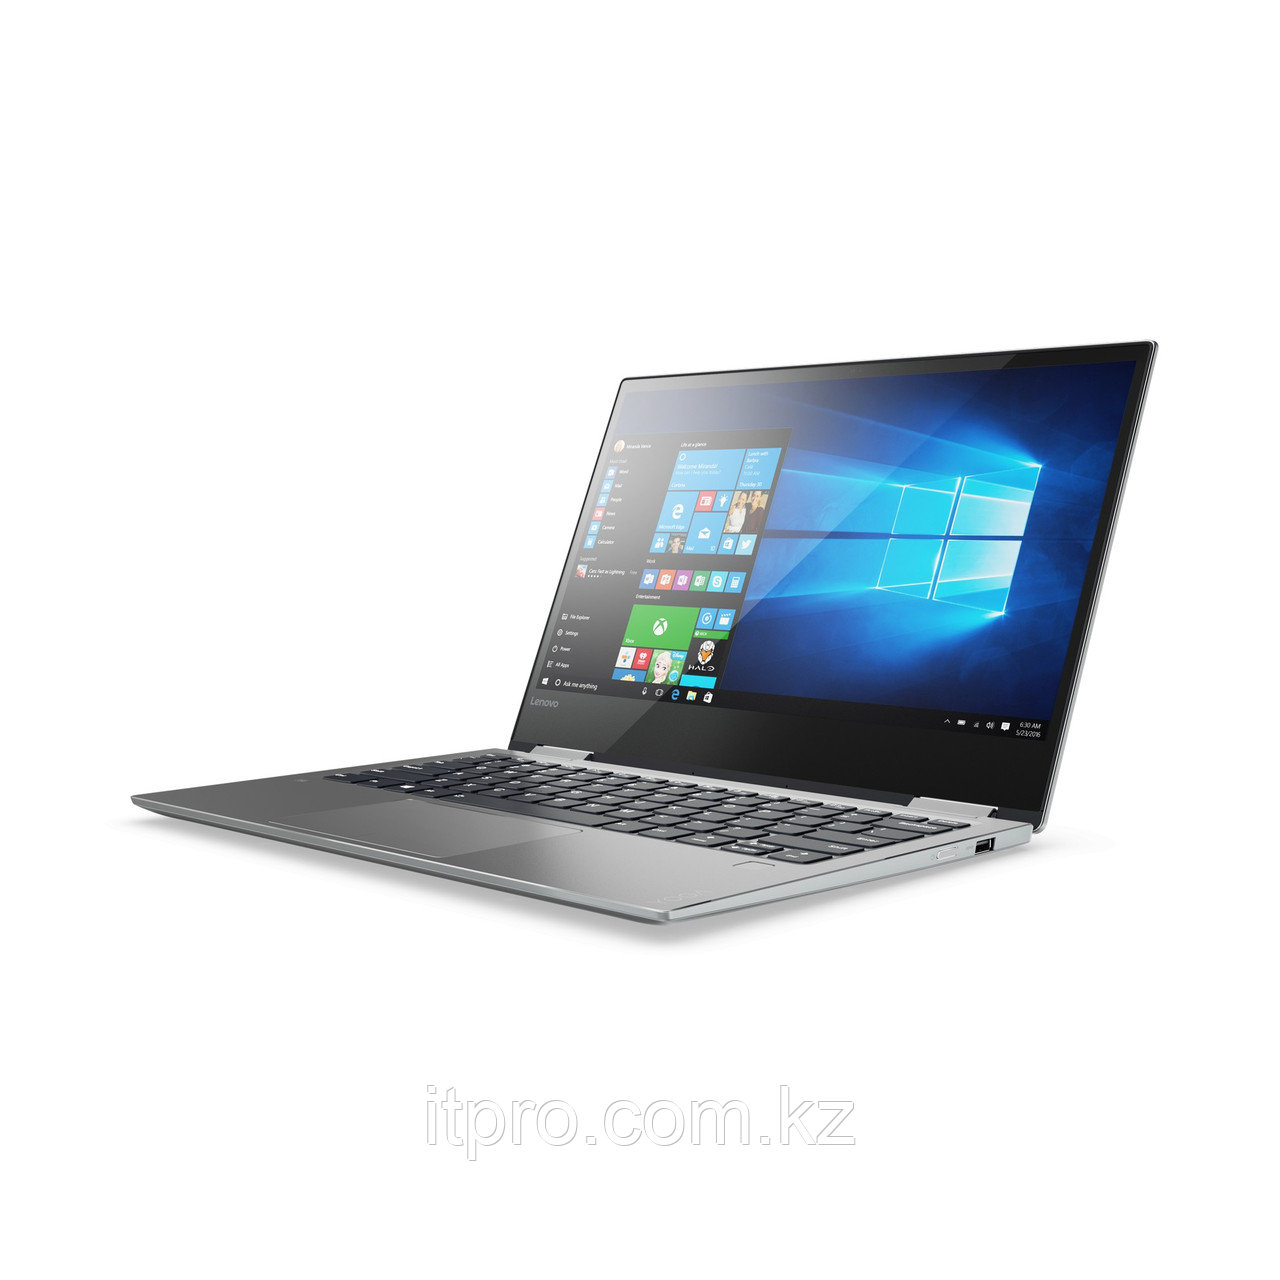 Notebook Lenovo IdeaPad Yoga 720  GR 80X7000FRK